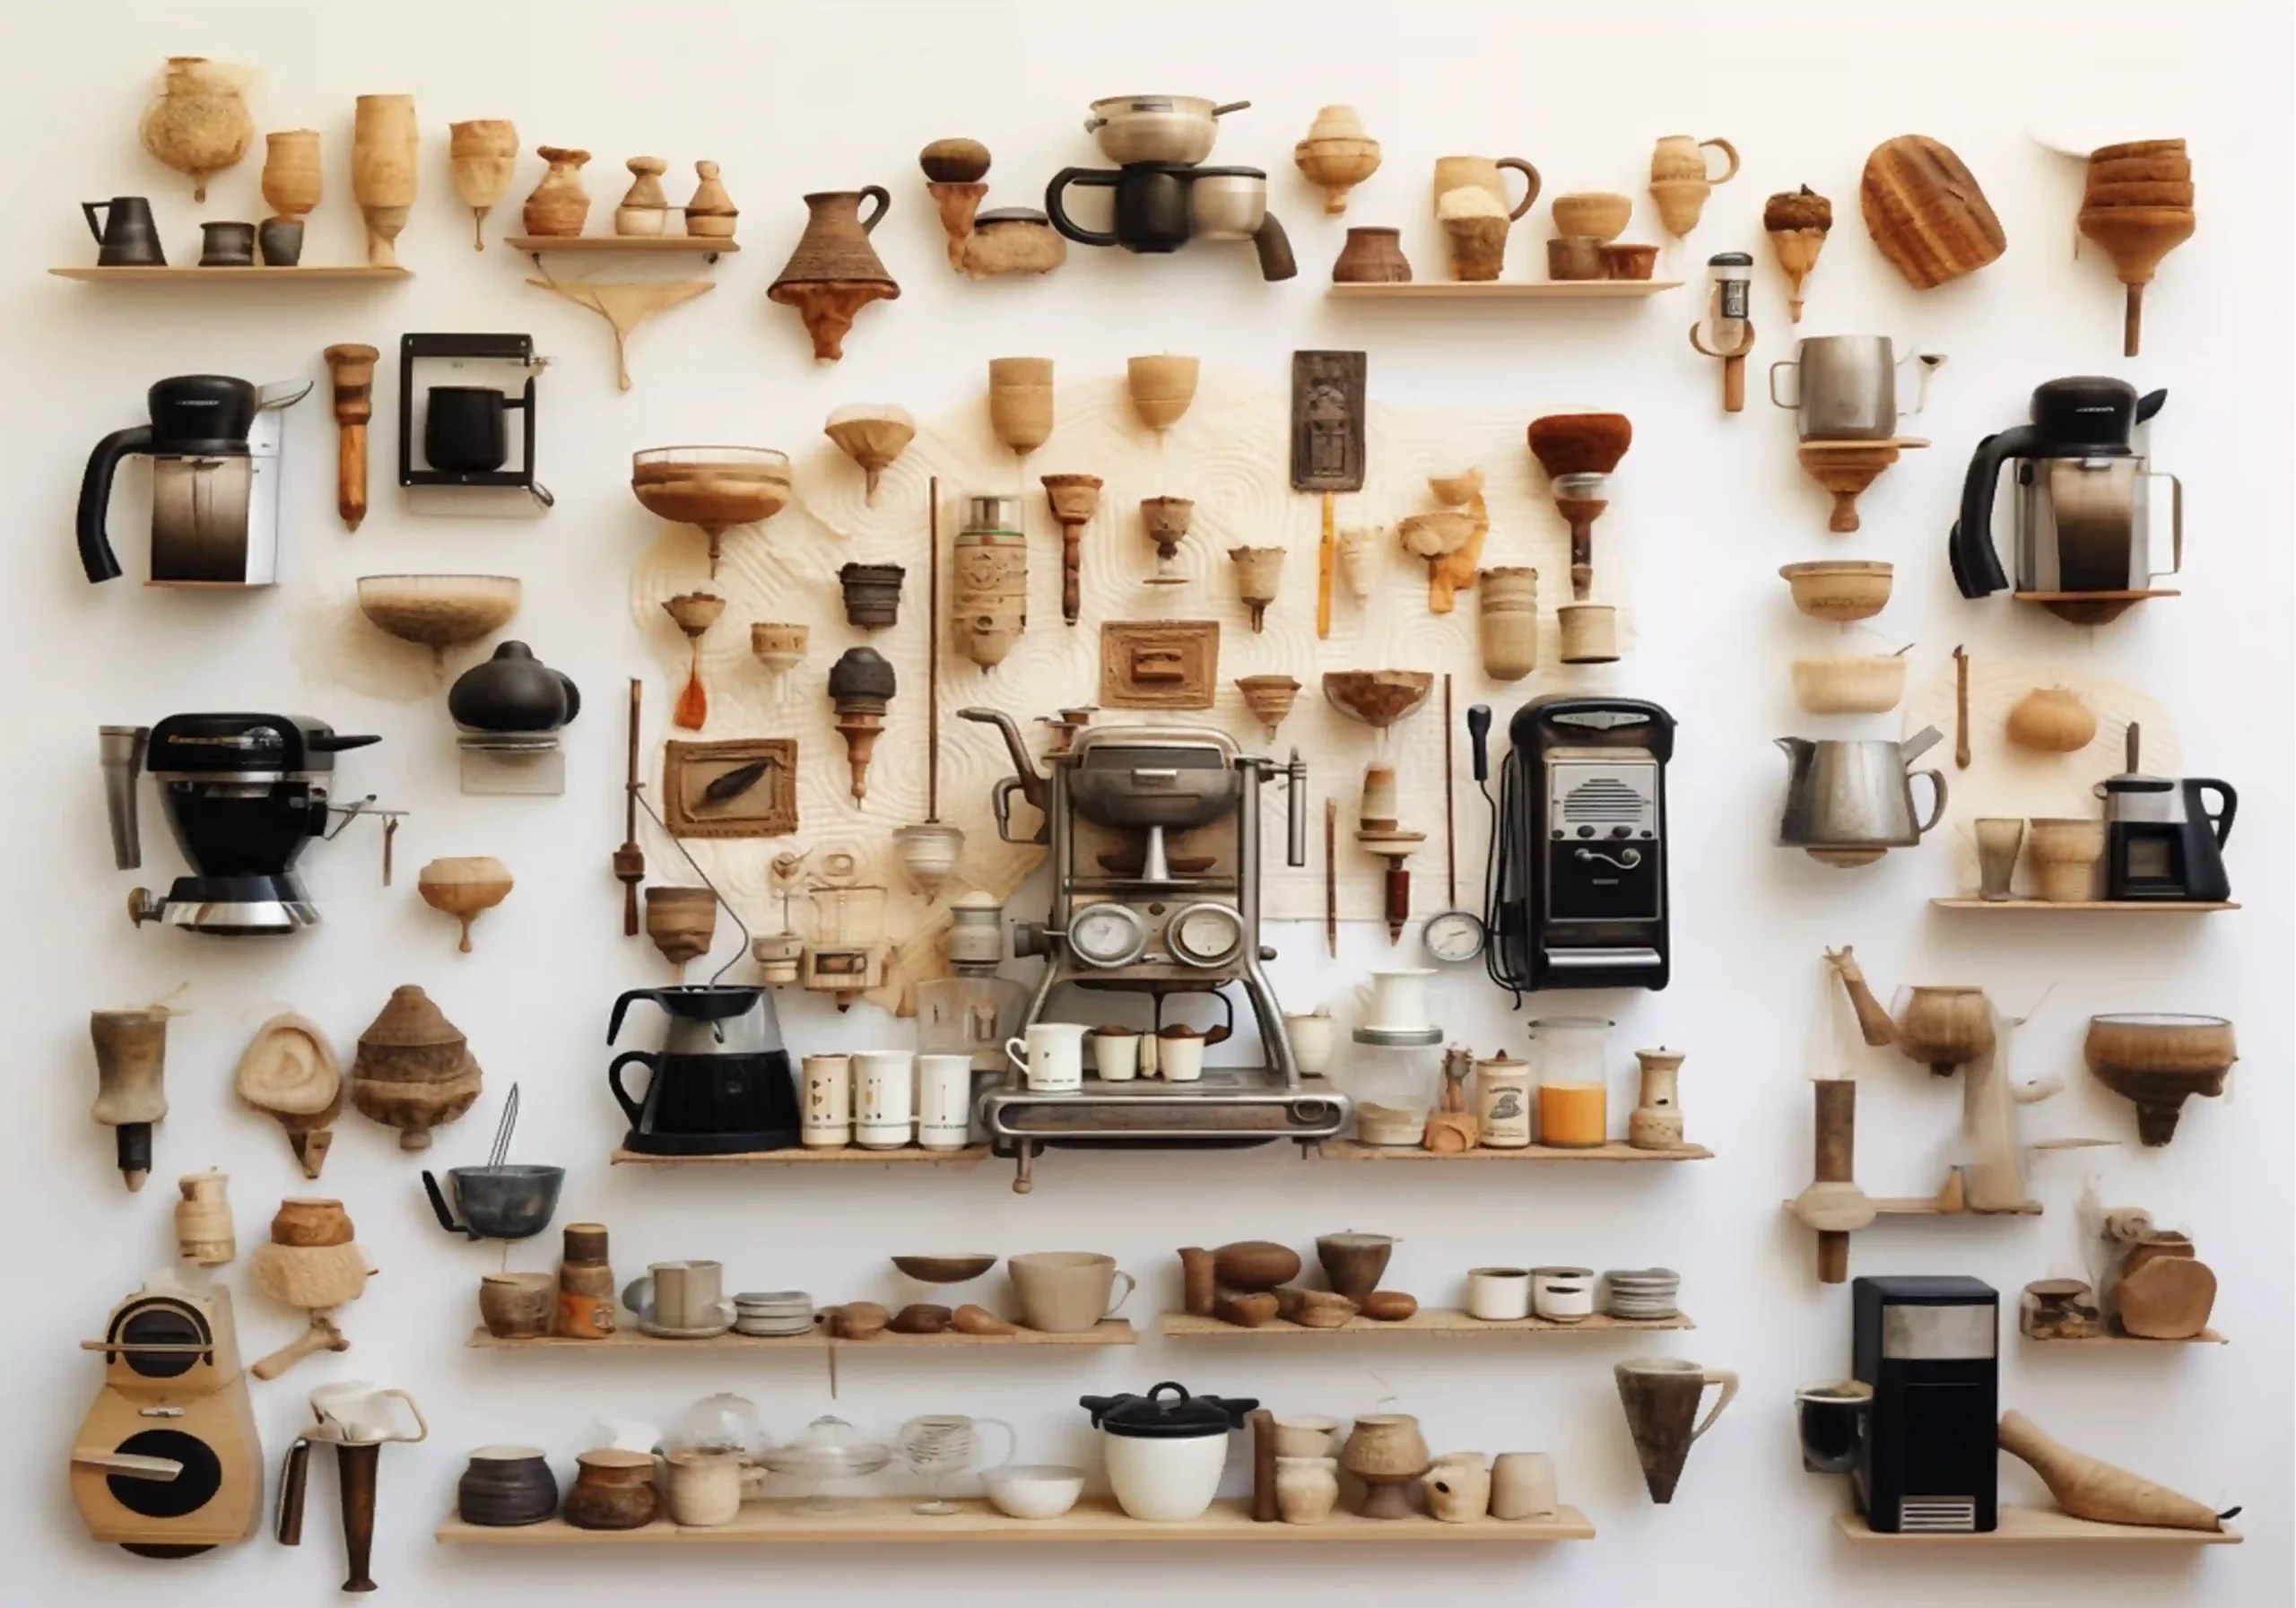 Collage aus den 50er-Jahre aus der Küche und Utensilien wie Kaffeekanne mit Filterkaffee. Tassen + Kaffeefilter, Handfilter und im Hintergrund Kaffeekaraffe